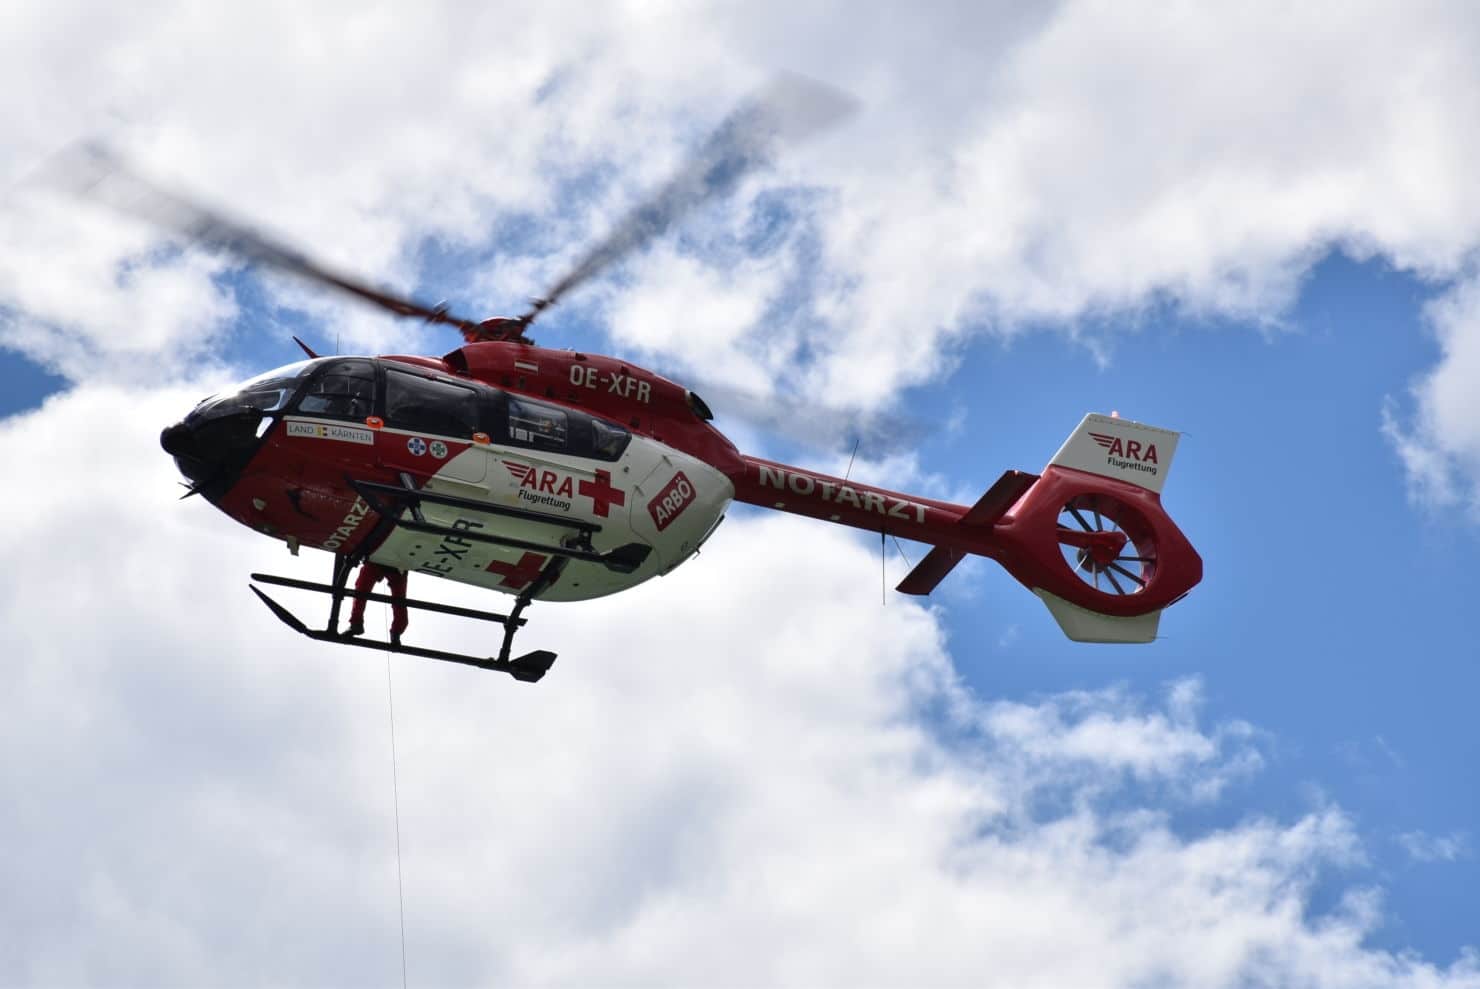 Der schwer verletzte 52-Jährige wurde nach medizinischer Erstversorgung vor Ort in das Klinikum Klagenfurt geflogen.